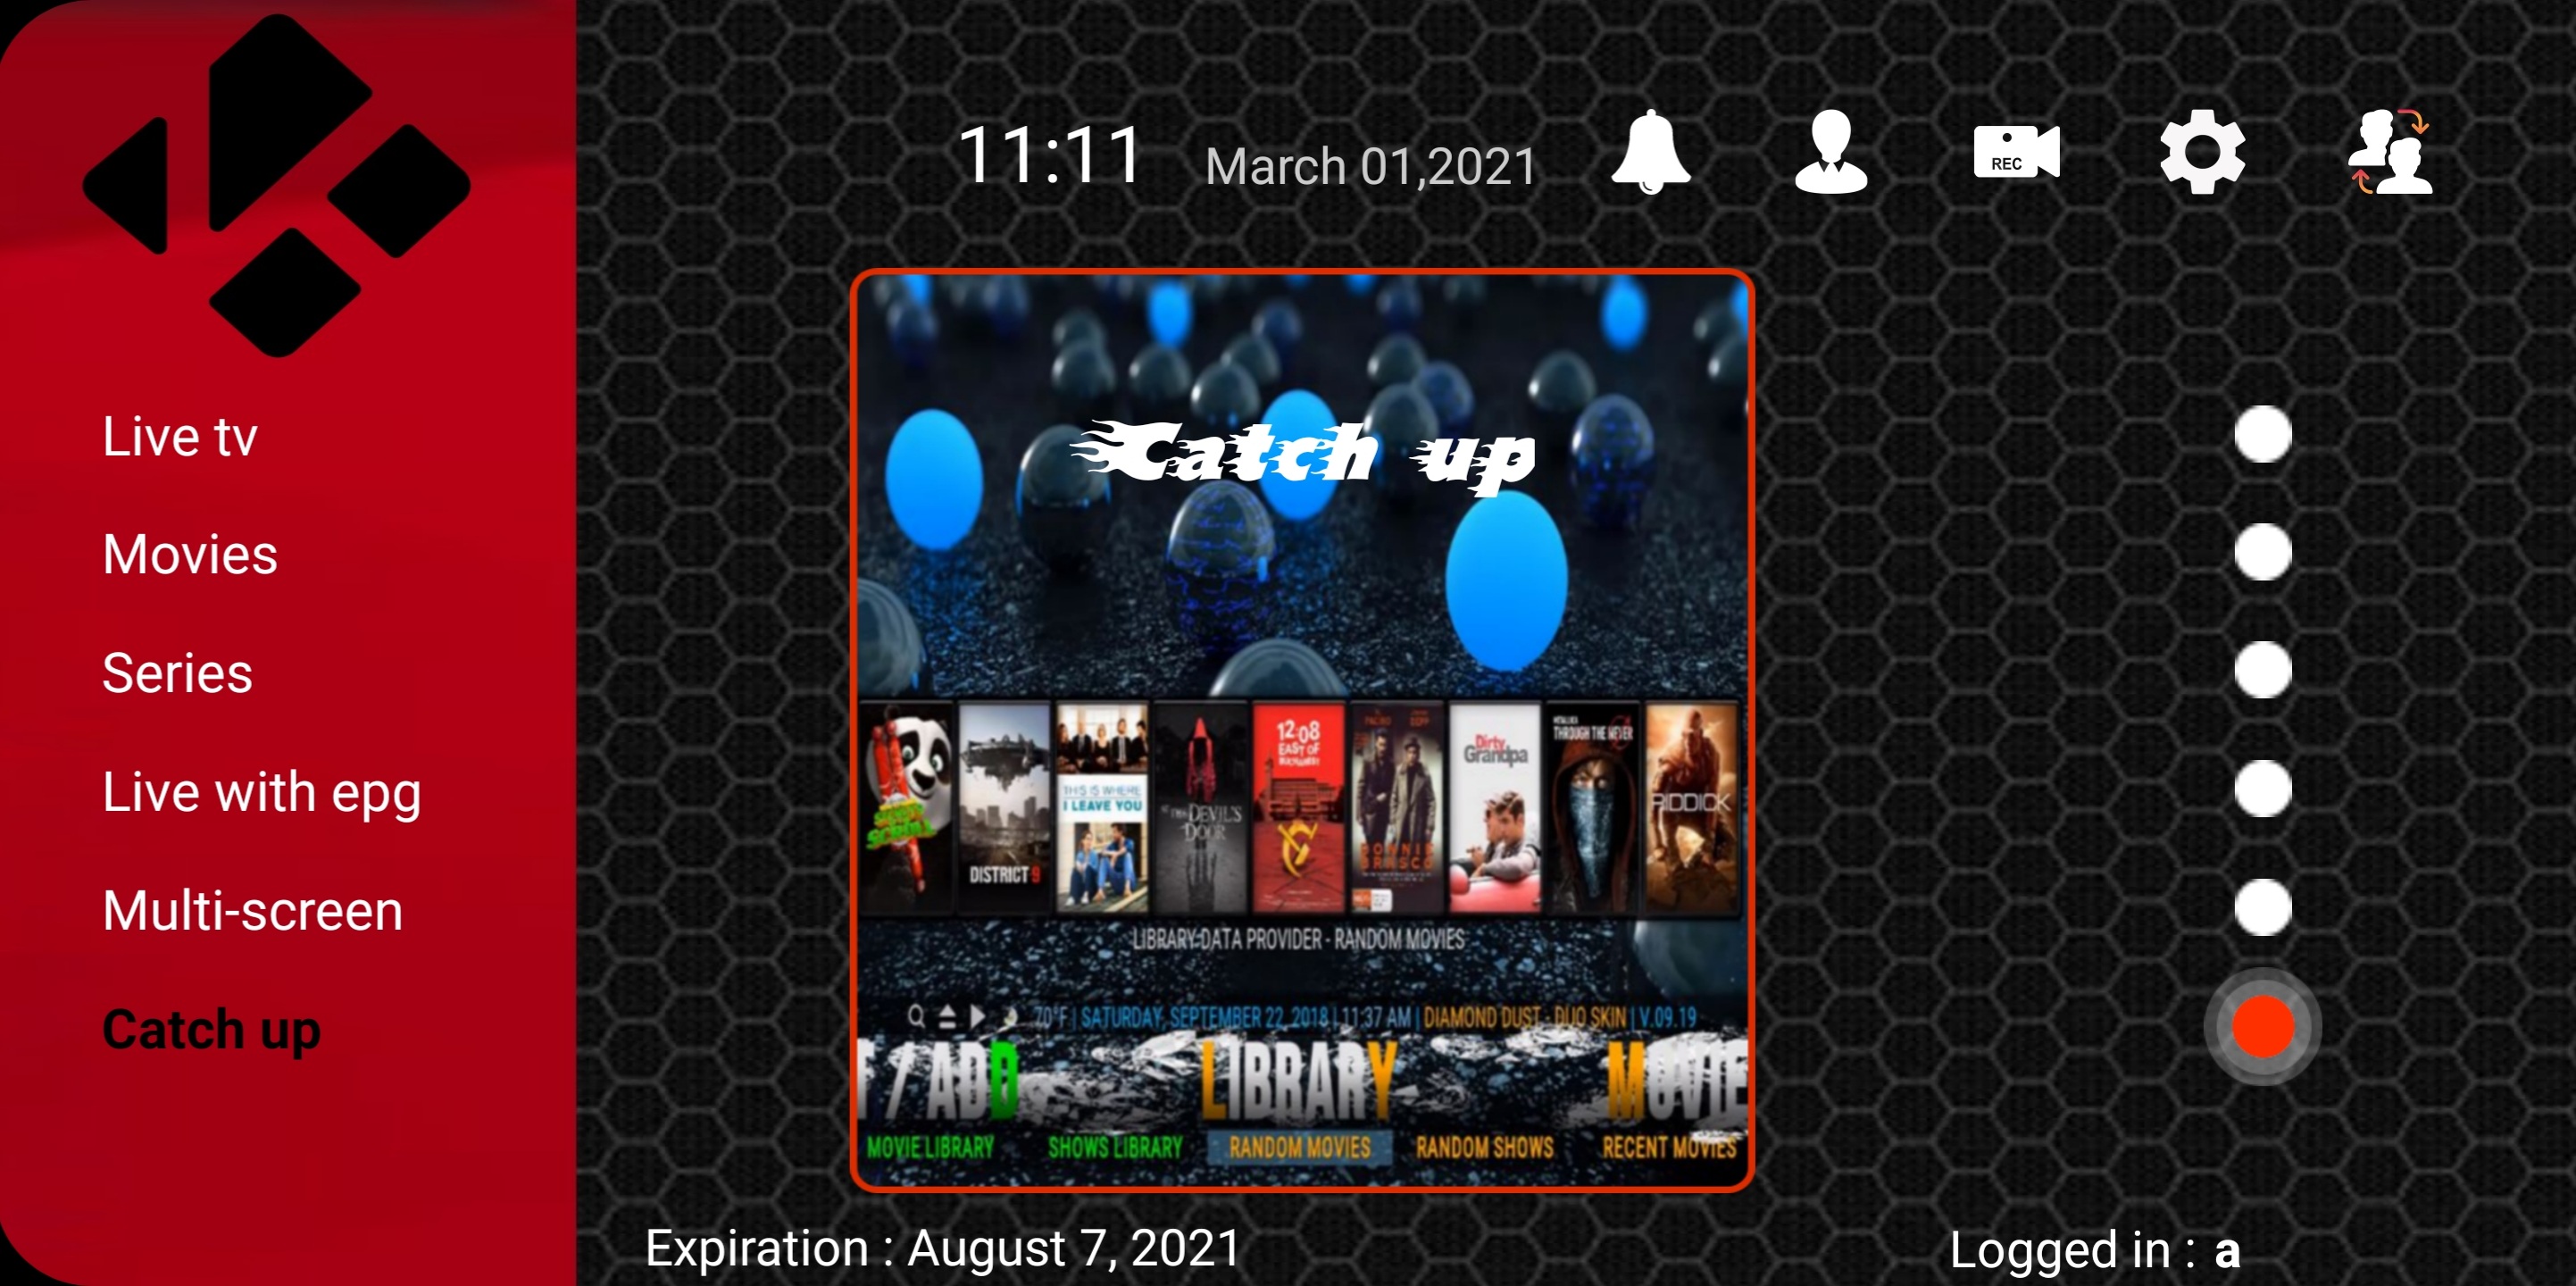 Screenshot_20210301-111118_Monster Apps.jpg